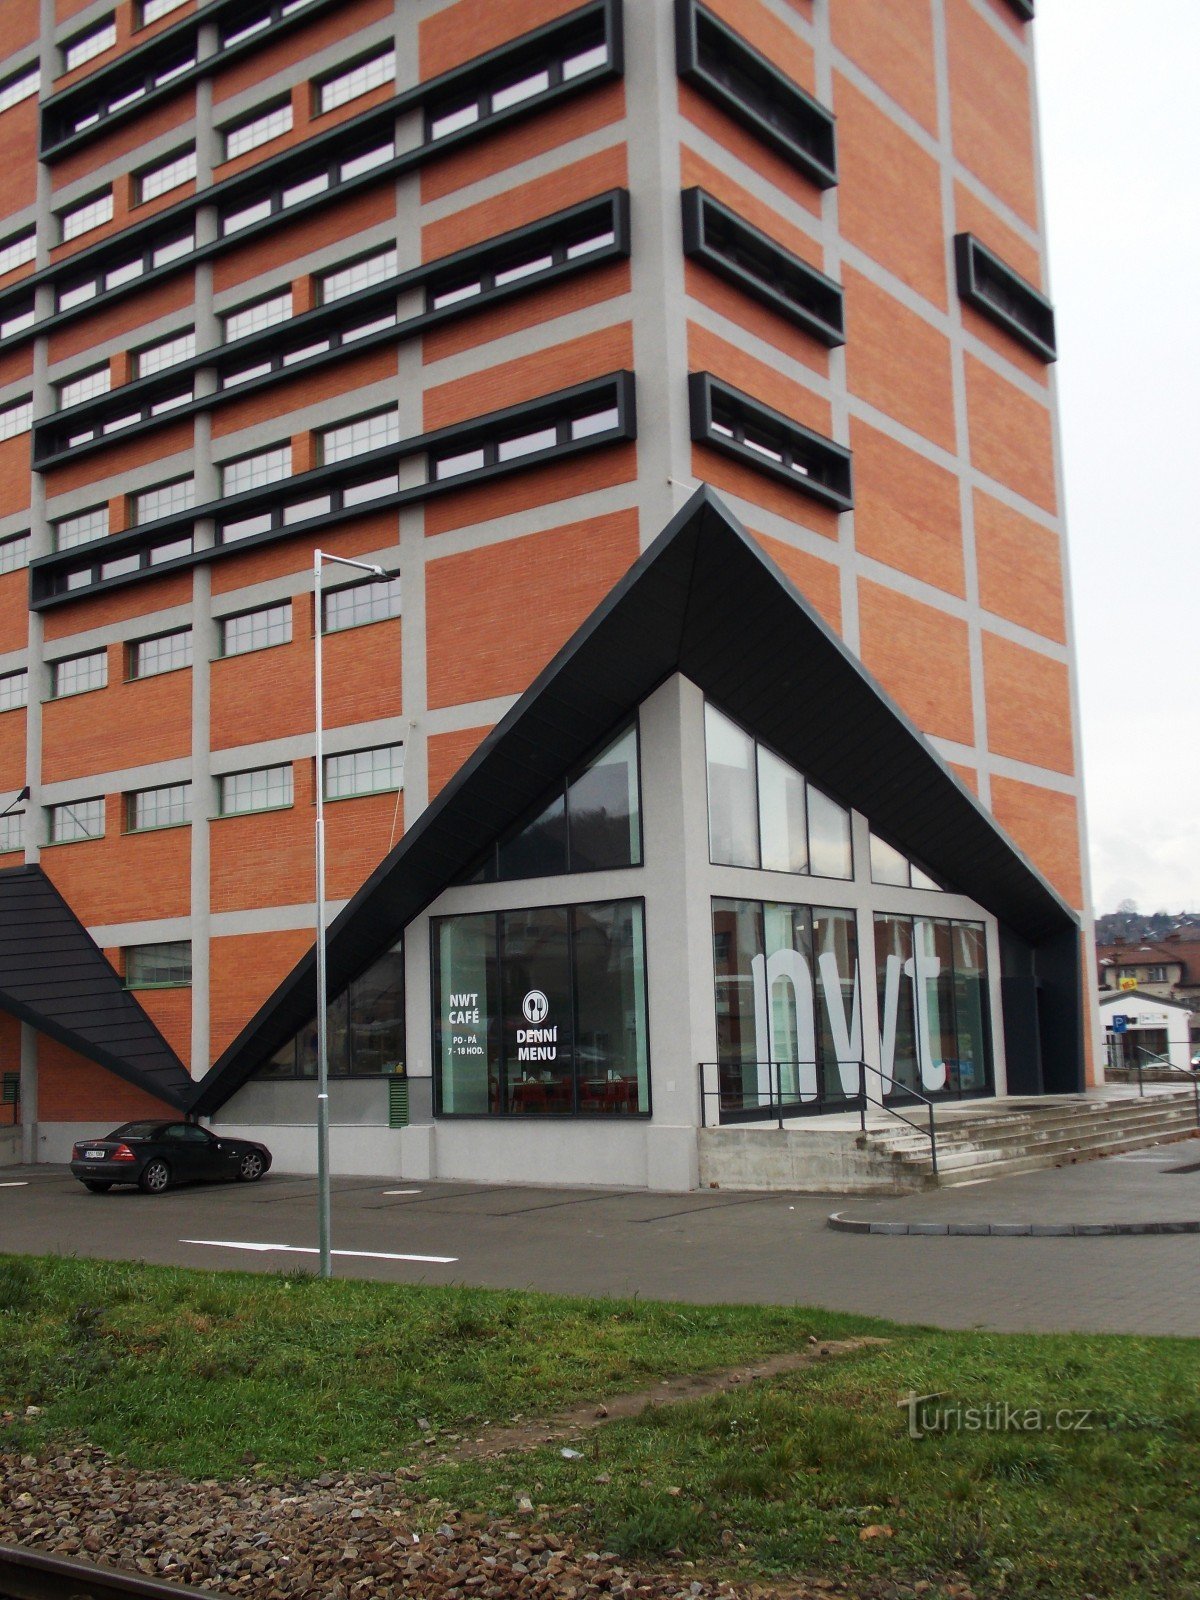 Edificio NWT a Zlín, Prštné